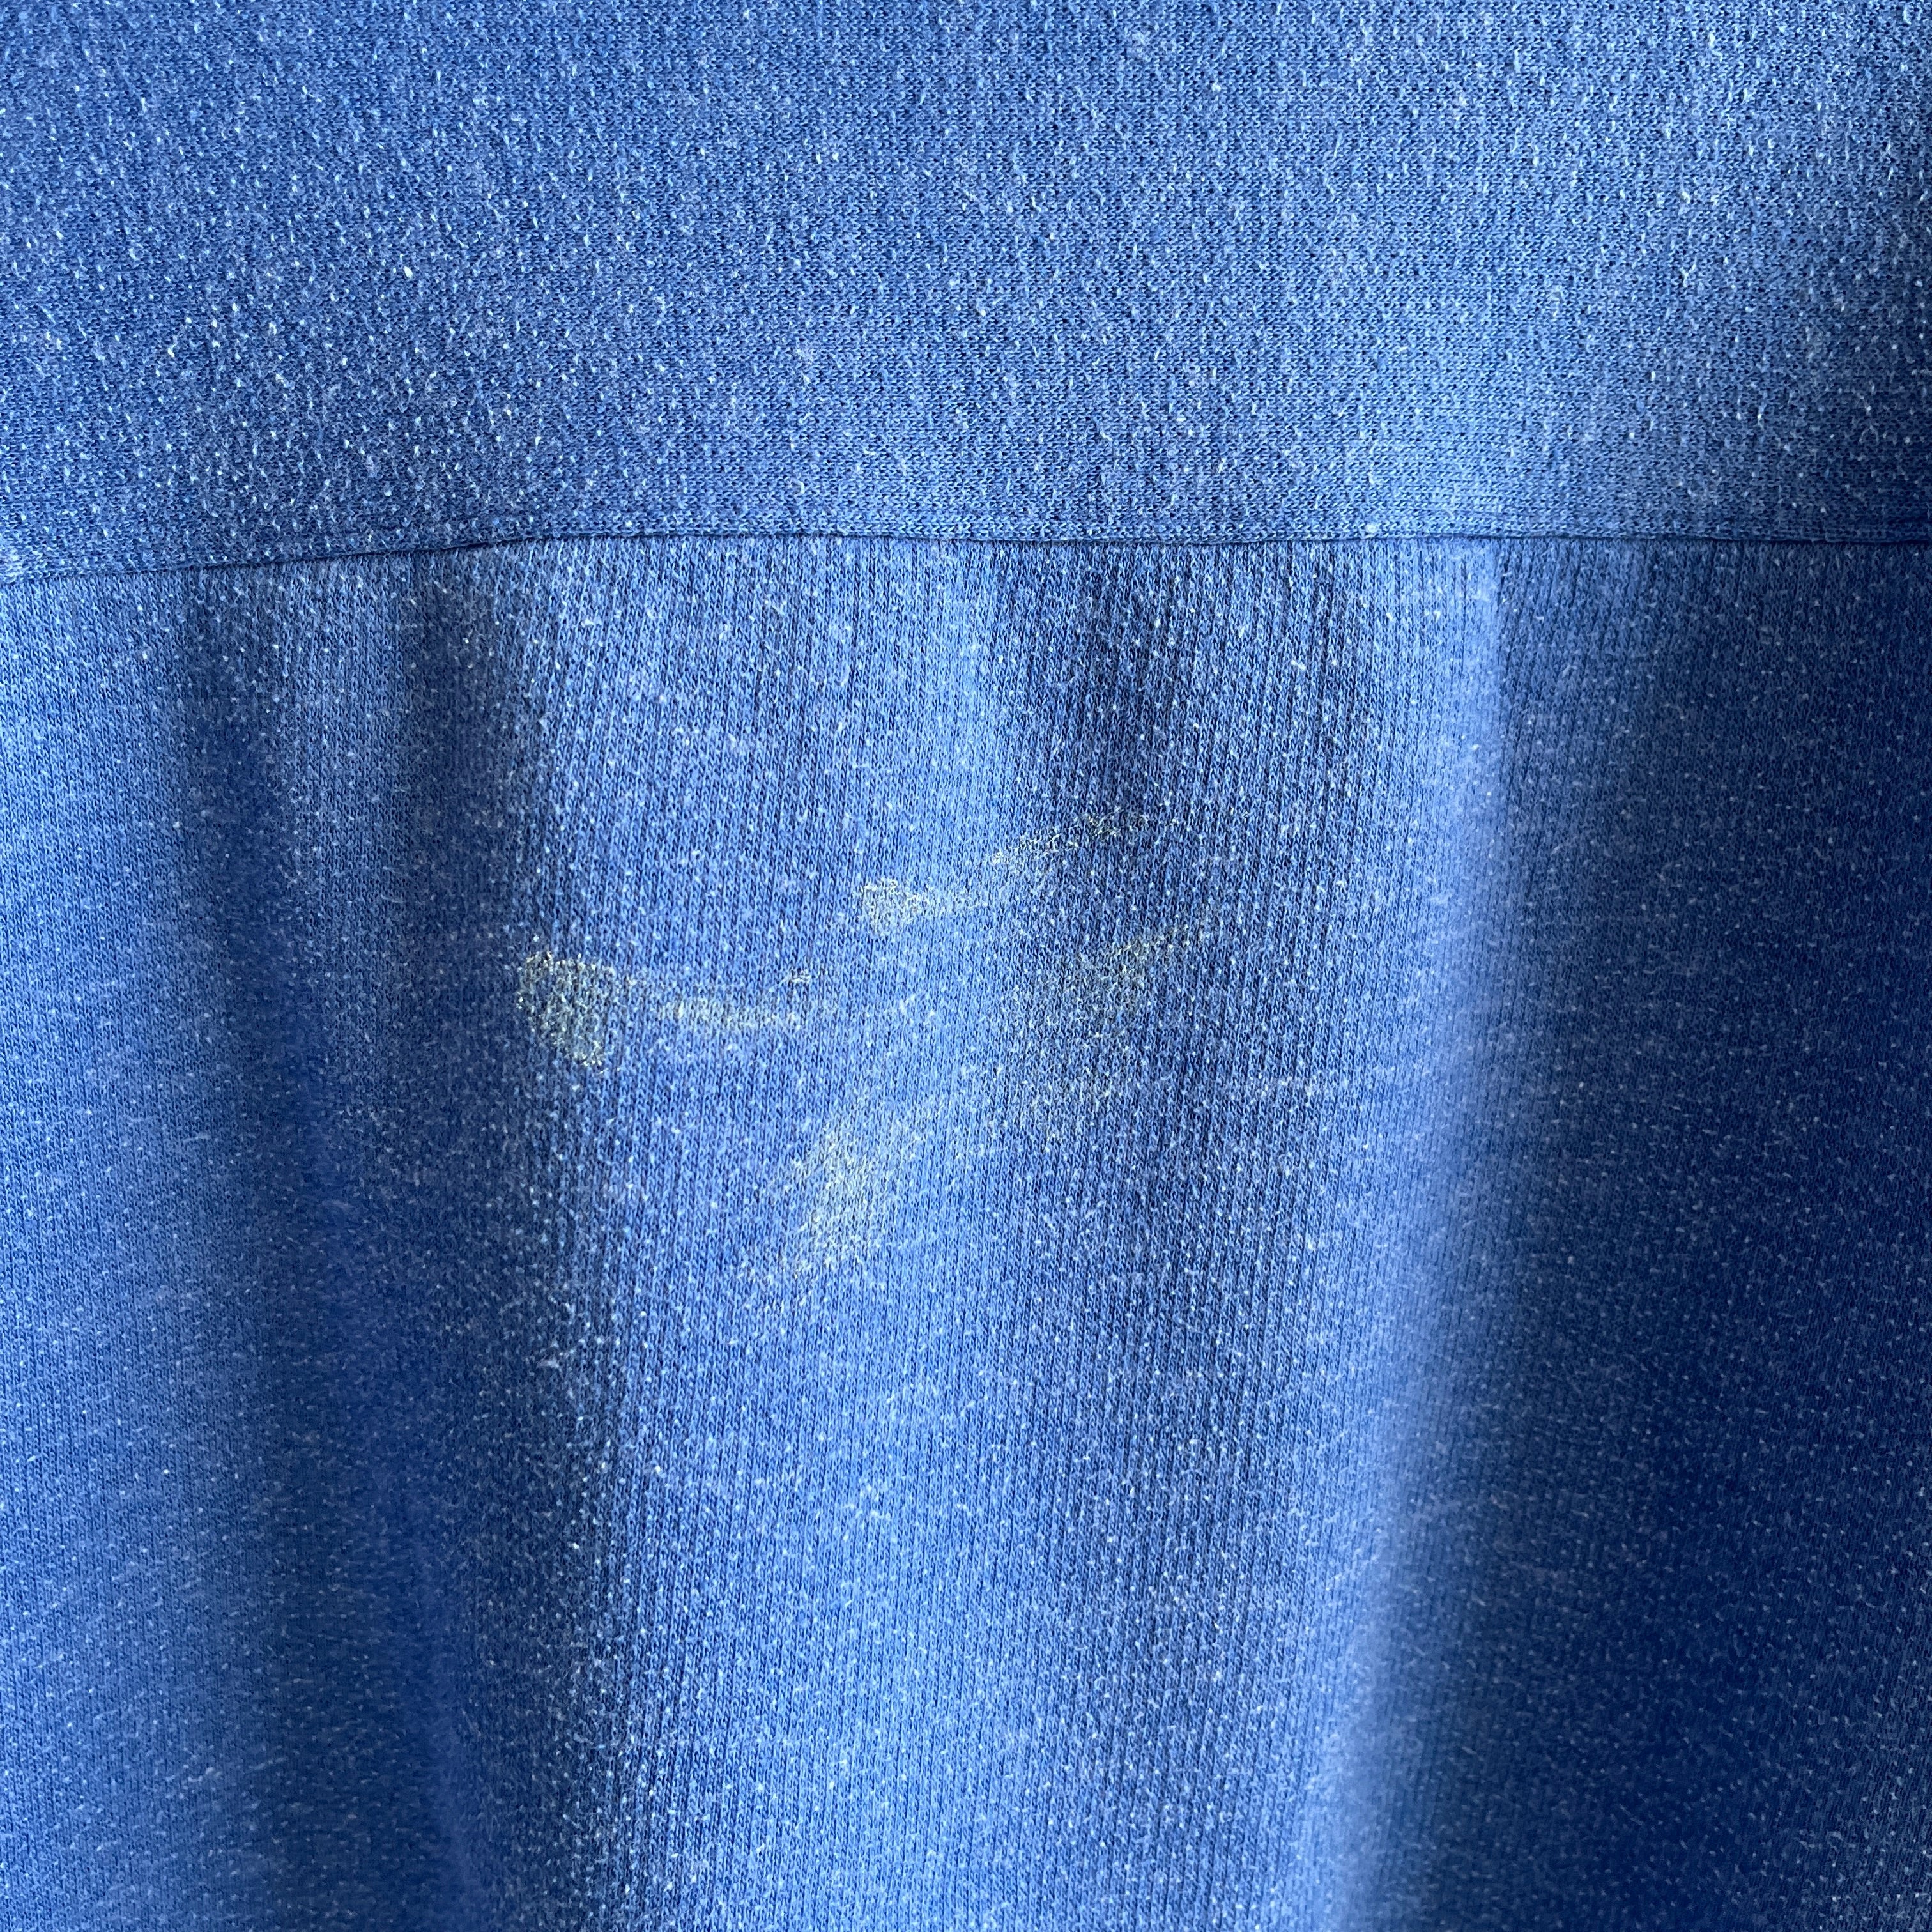 Sweat-shirt bleu vierge de vêtements de sport athlétiques des années 1970 inhabituel (et Rad)